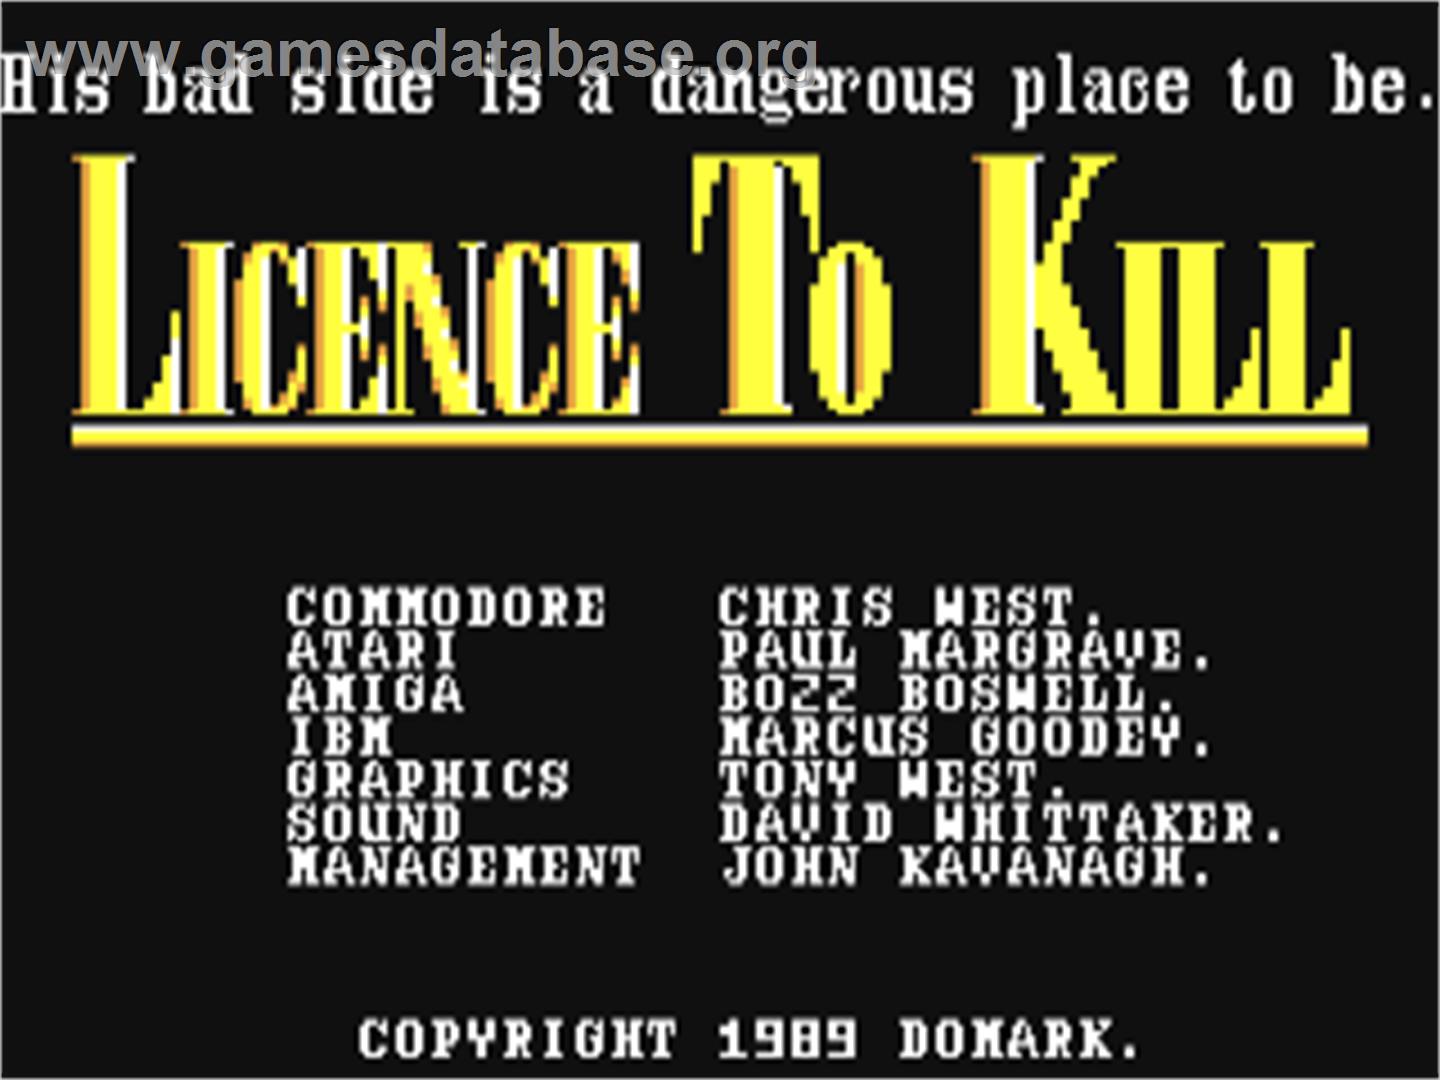 007: Licence to Kill - Commodore 64 - Artwork - Title Screen